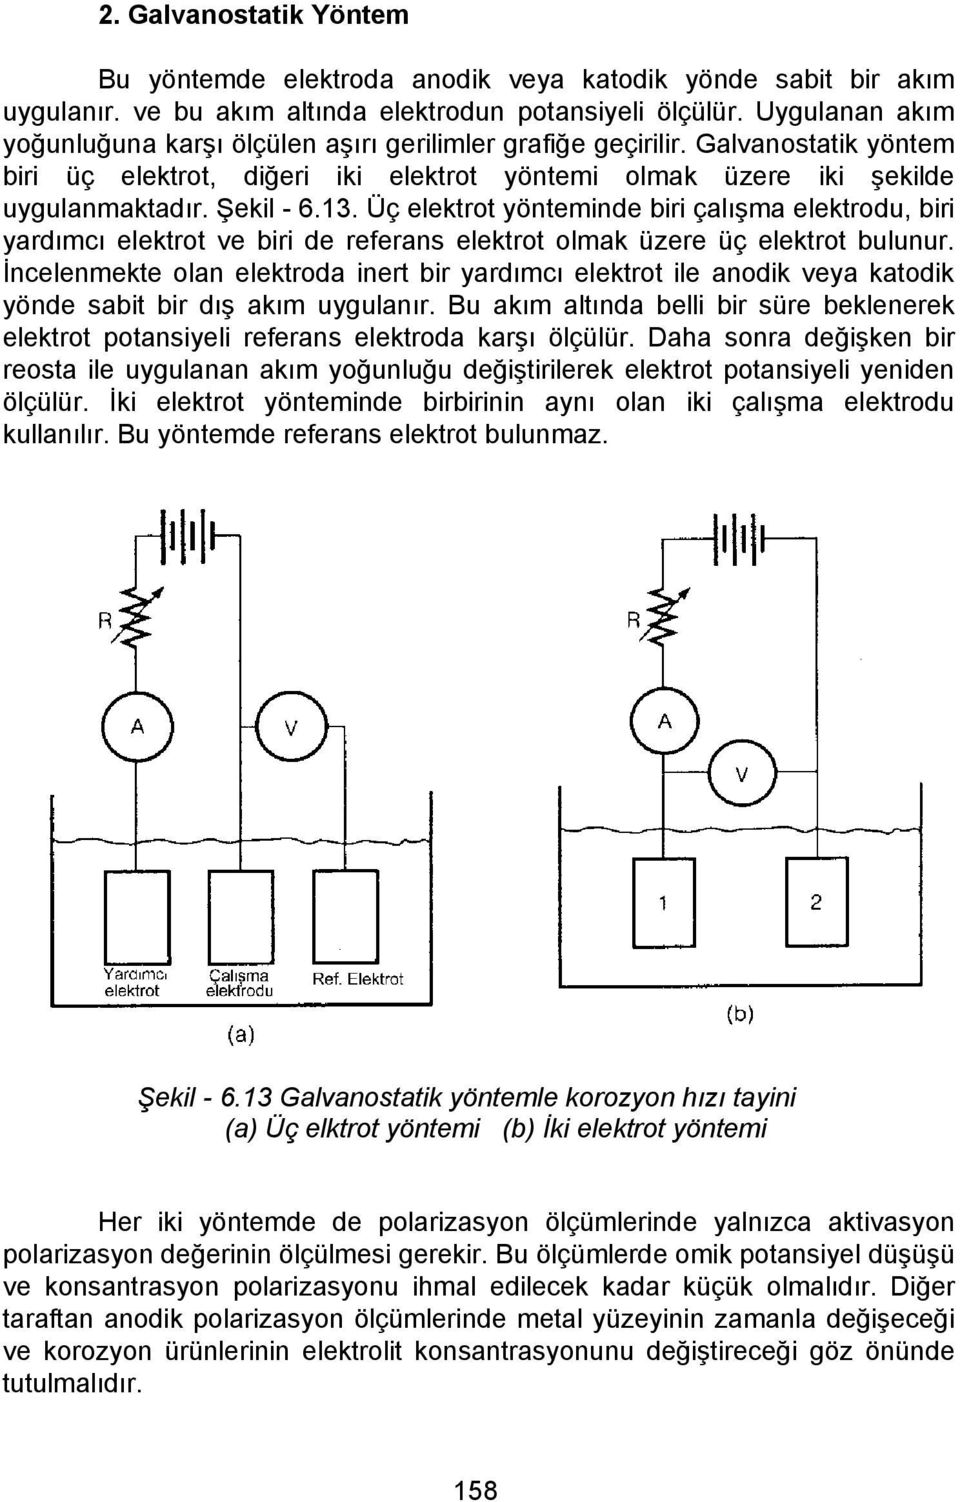 Üç elektrot yönteminde biri çalışma elektrodu, biri yardımcı elektrot ve biri de referans elektrot olmak üzere üç elektrot bulunur.